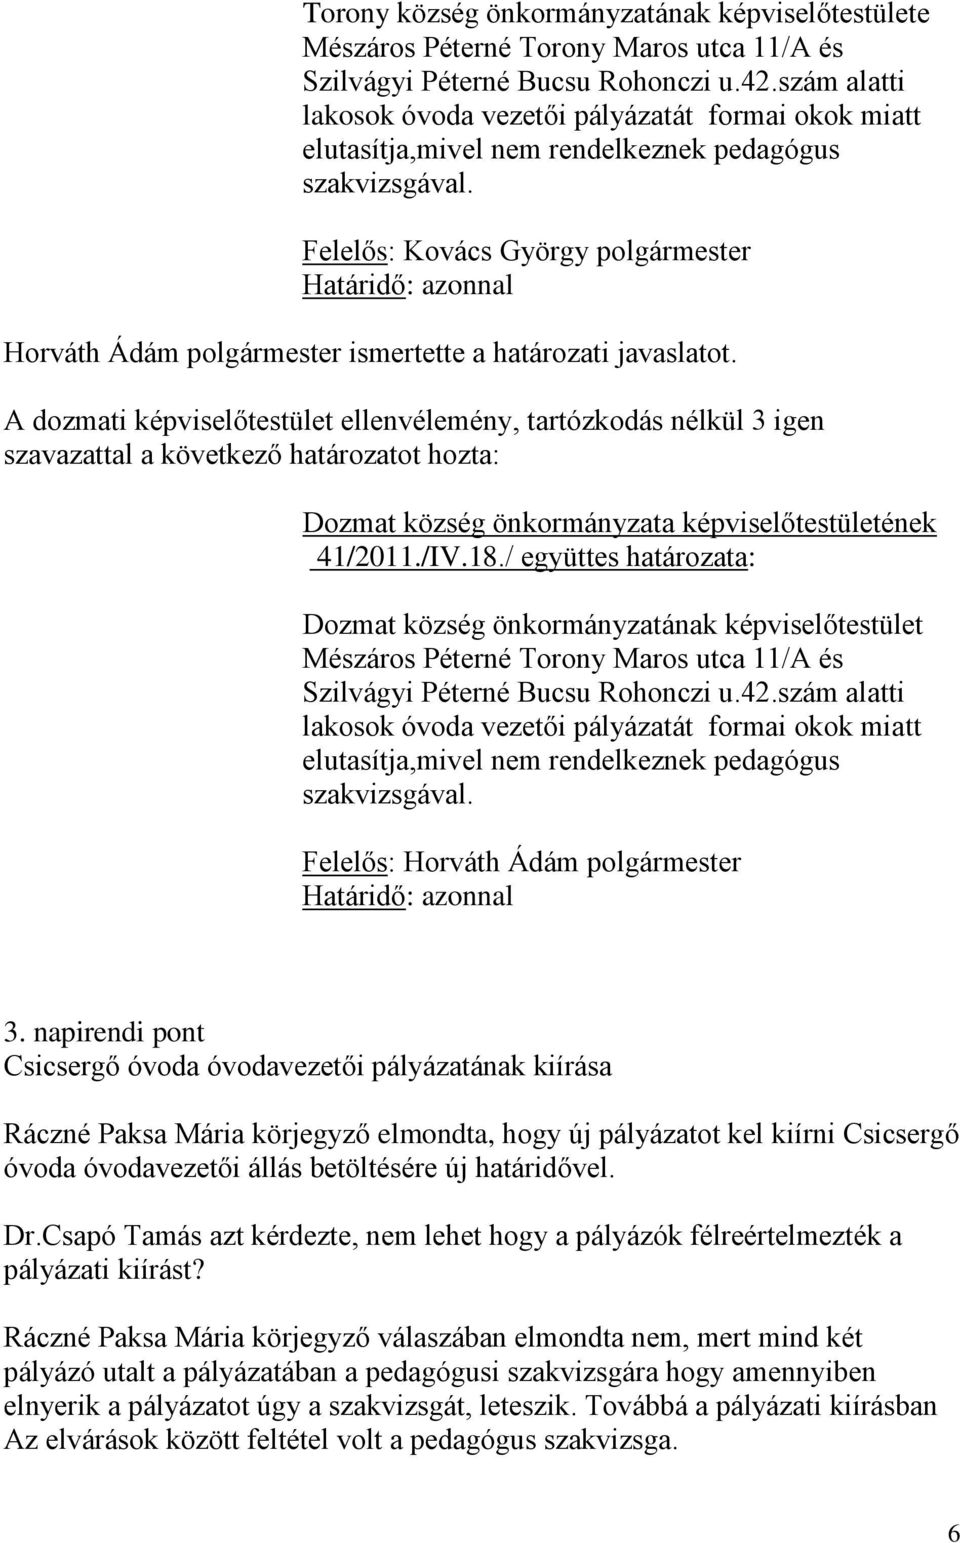 Felelős: Kovács György polgármester A dozmati képviselőtestület ellenvélemény, tartózkodás nélkül 3 igen szavazattal 41/2011./IV.18.